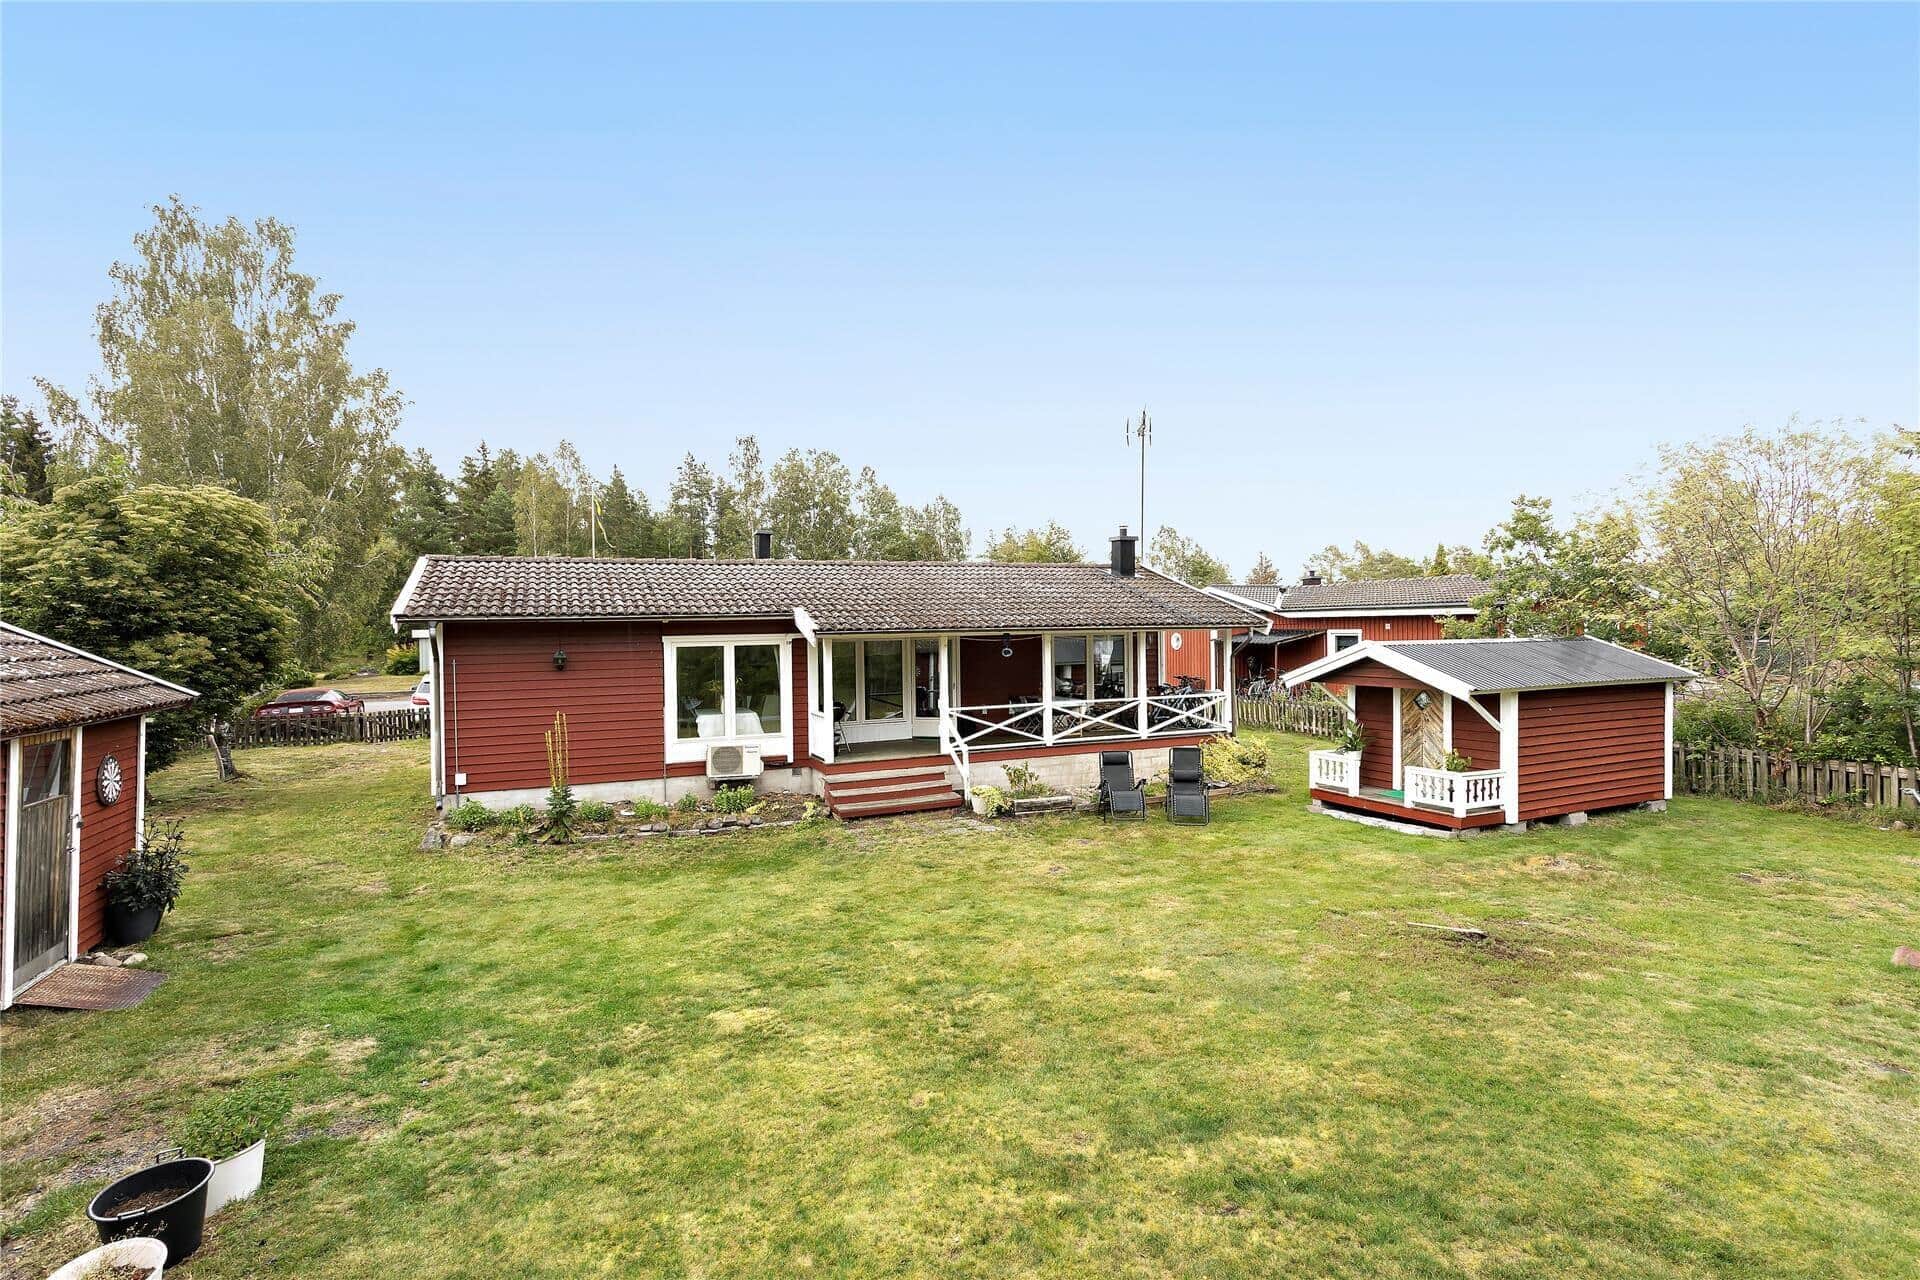 Image 0-171 Holiday-home OST428, Ekeholmsvägen 7, DK - 383 92 Mönsterås